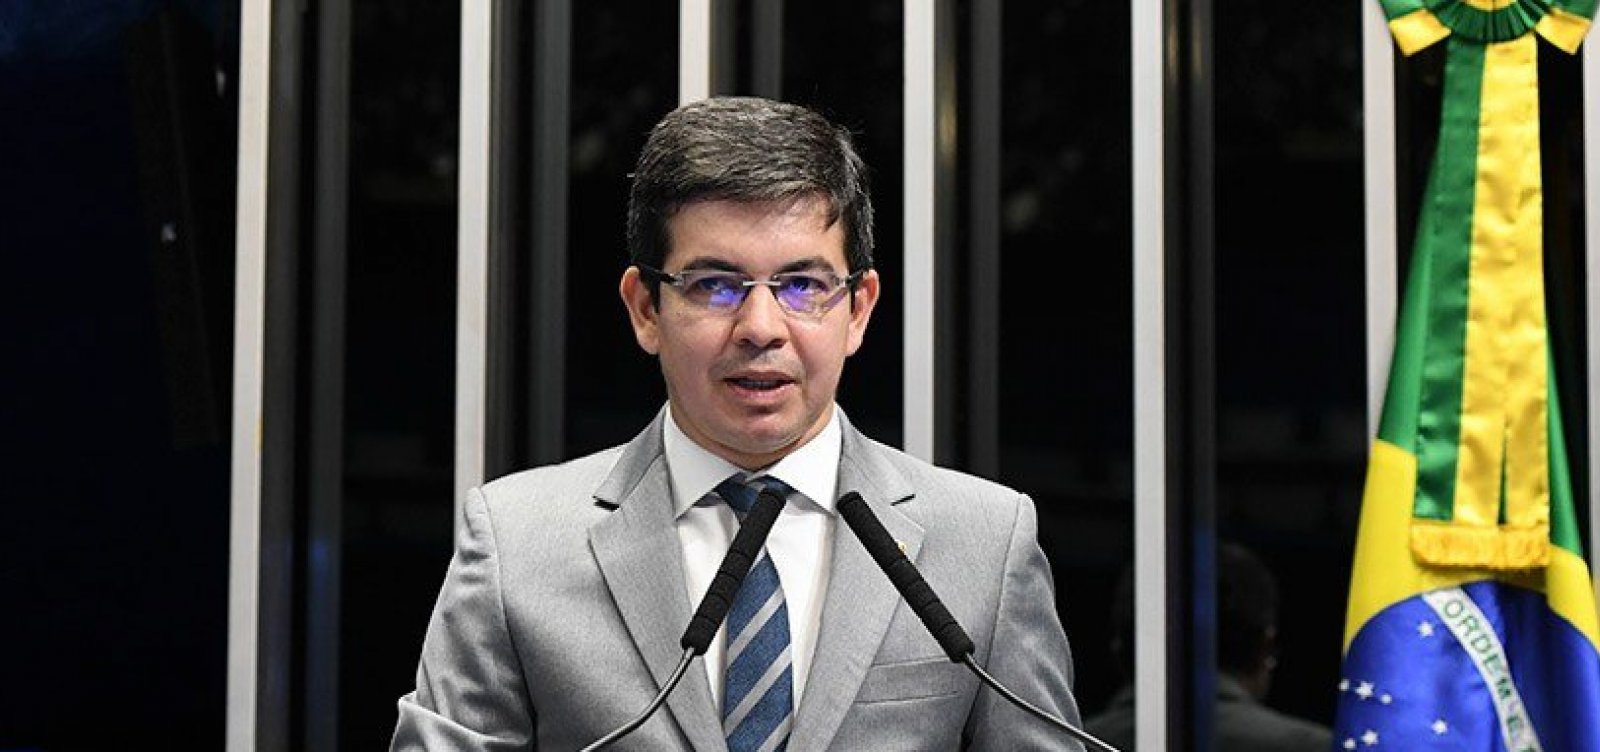 Chegaremos até Bolsonaro nas investigações, diz líder da oposição sobre CPI do MEC